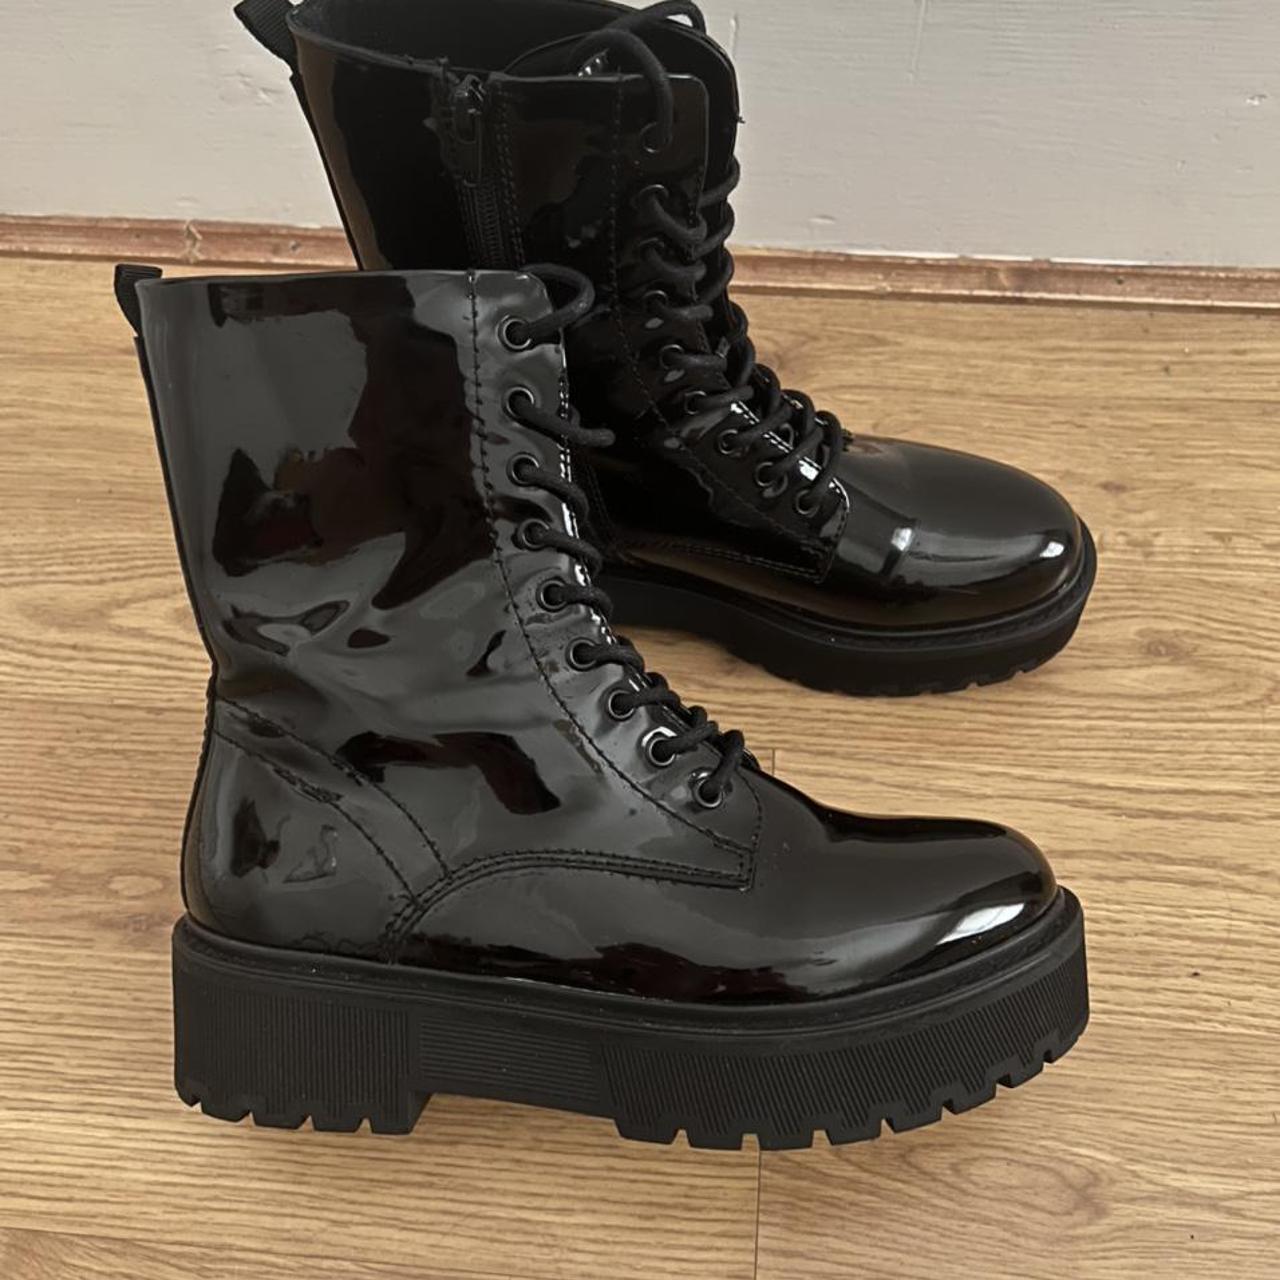 Chunky black shiny boots with platform. Size EU 40,... - Depop